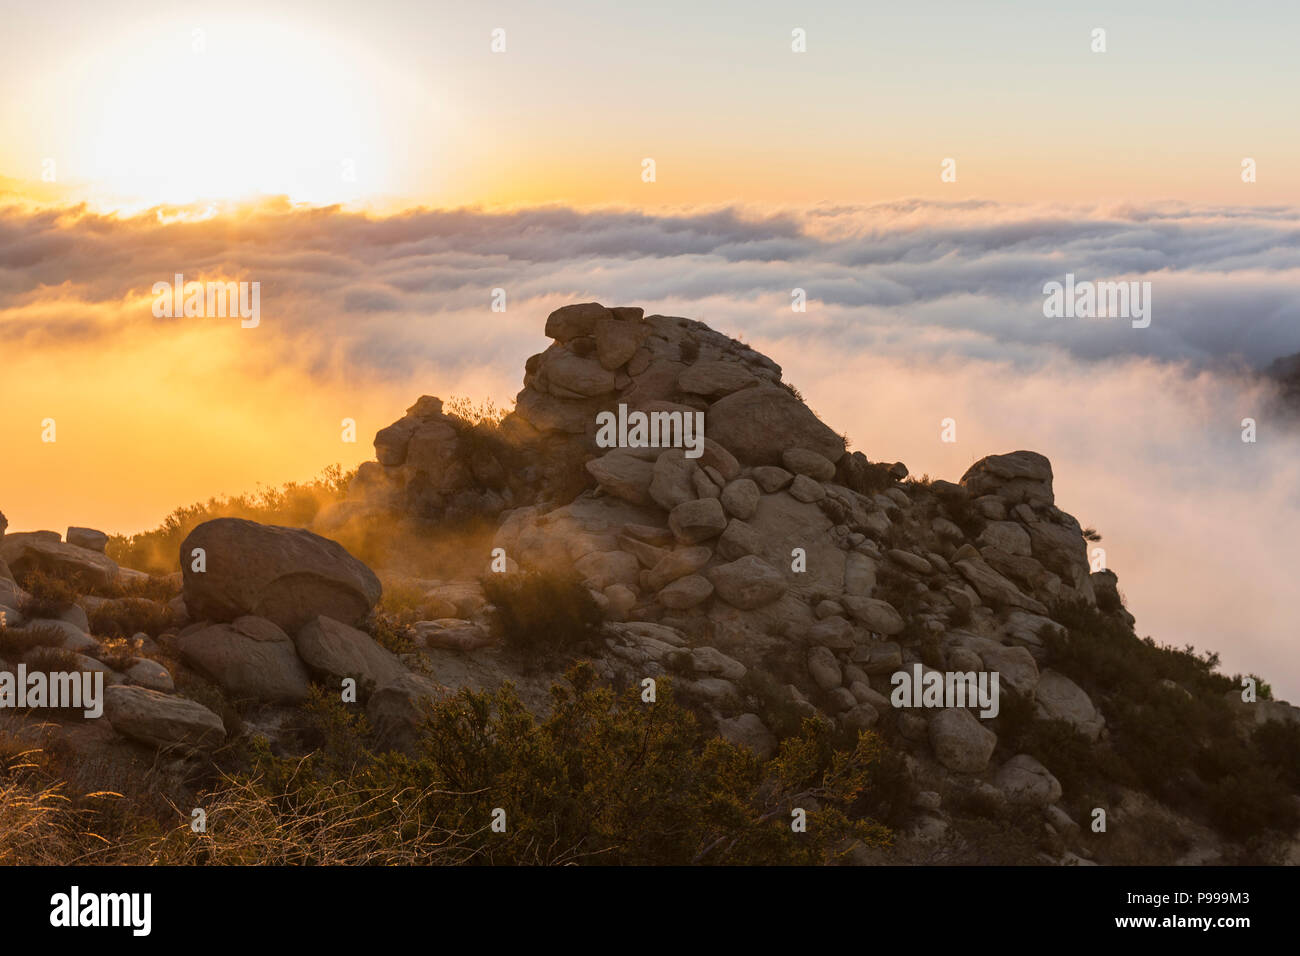 Amanecer nubes sobre el Parque pico rocoso en el Valle de San Fernando, área de Los Angeles, California. Foto de stock